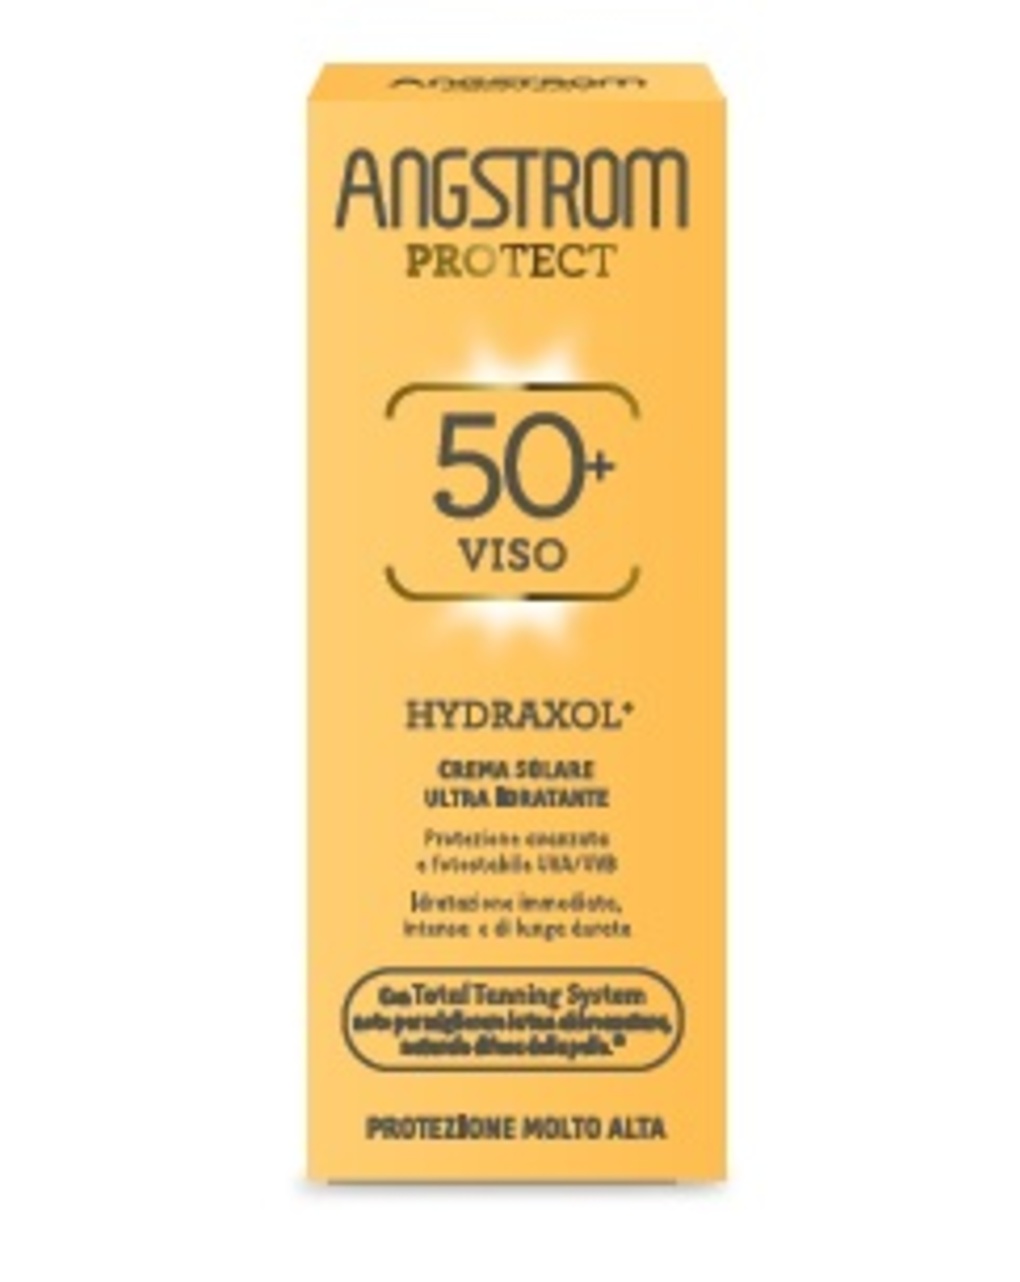 Crema solare protect hydraxol ultra protezione spf 50+ | 50ml – angstrom - Angstrom